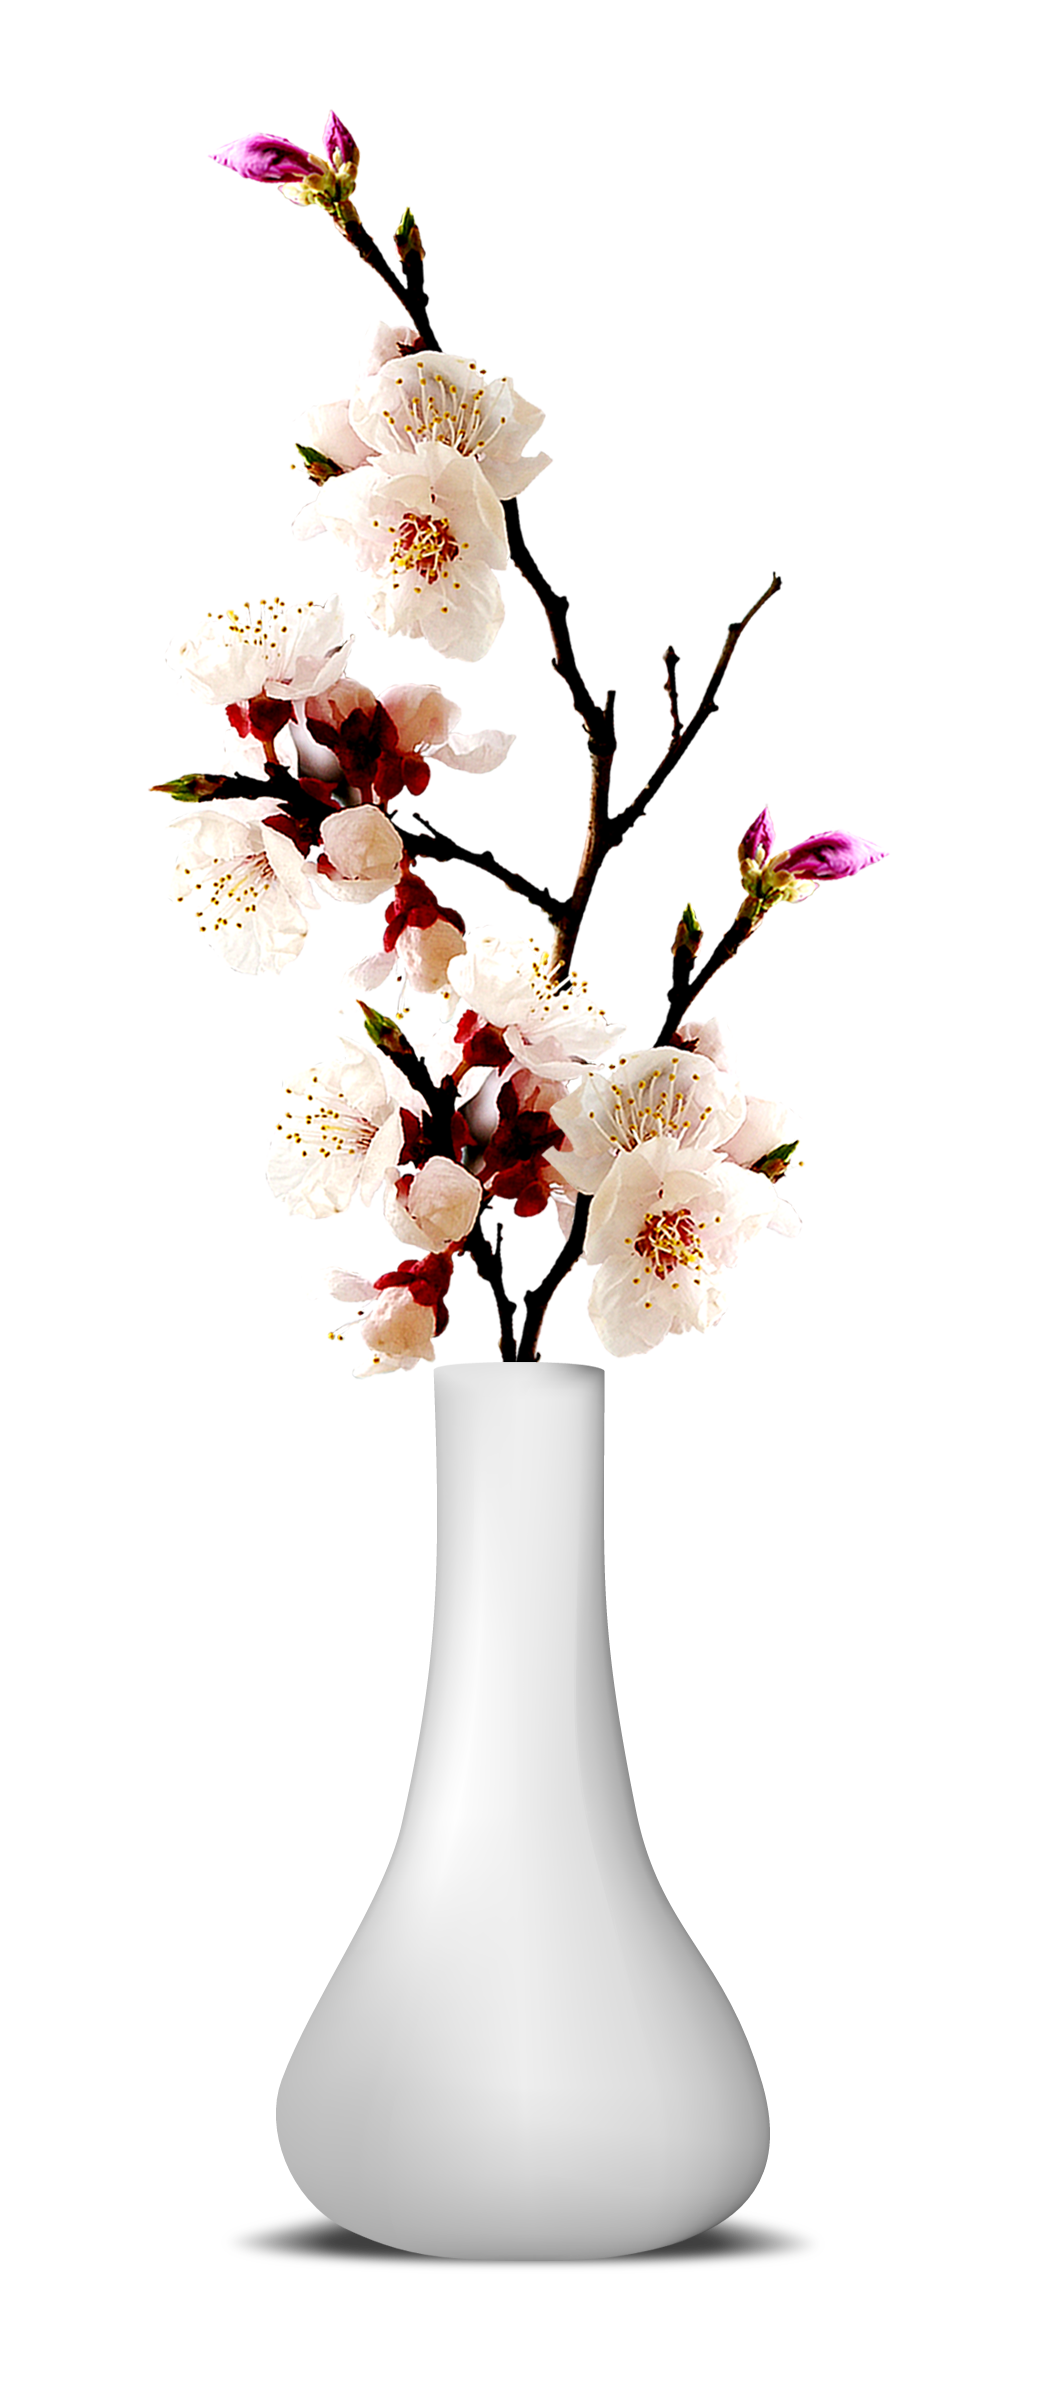 Immagine Trasparente del vaso del fiore del fiore